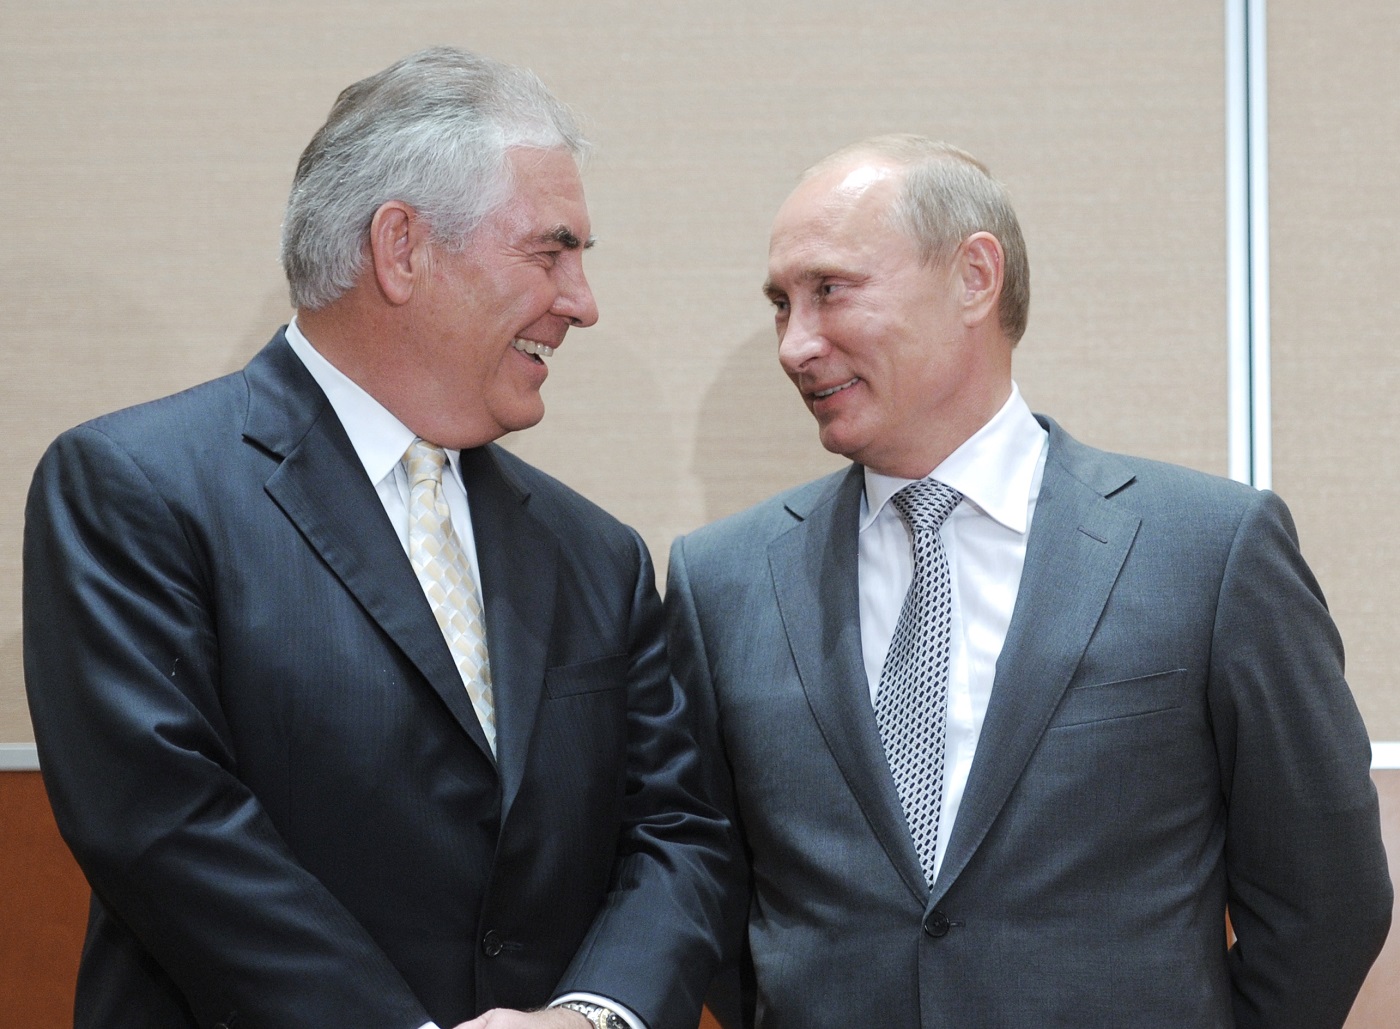 Nuevo secretario de Estado de EEUU tiene “buenas relaciones de trabajo” con Putin